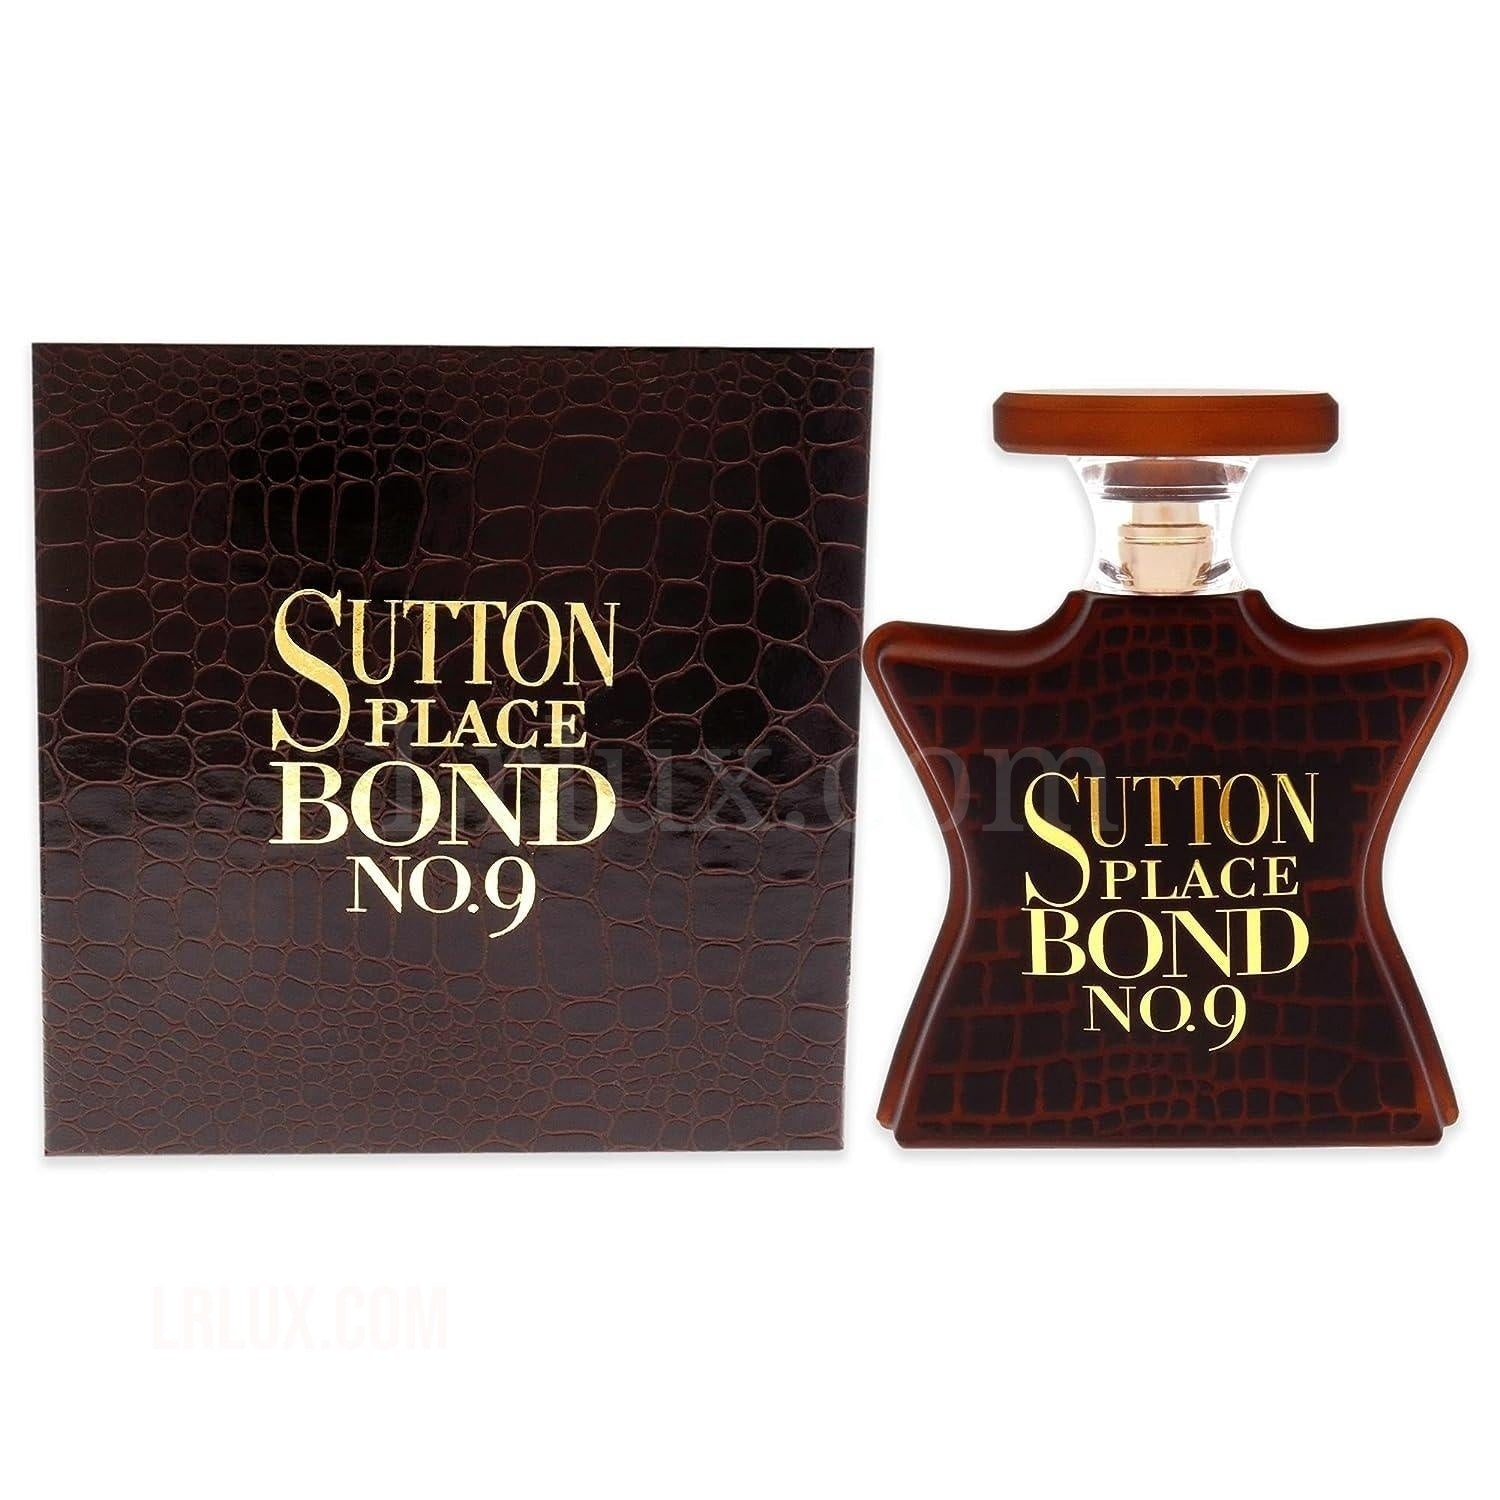 Bond No. 9 Sutton Place 3.4 oz (100 ml) Eau de Parfum Spray for Men - Lrlux.com